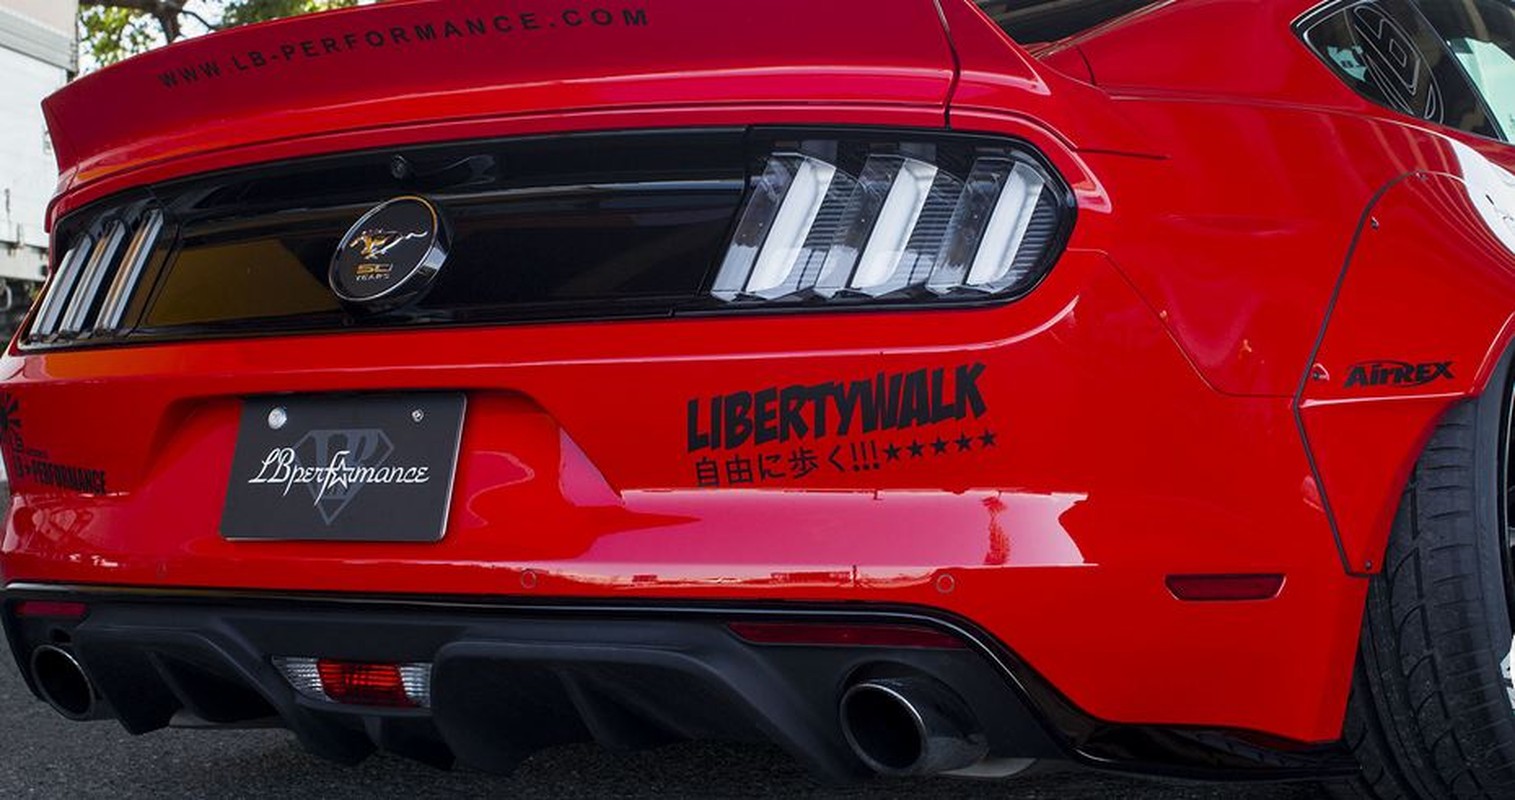 Ngam “ngua hoang” Ford Mustang Liberty Walk sieu khung-Hinh-8